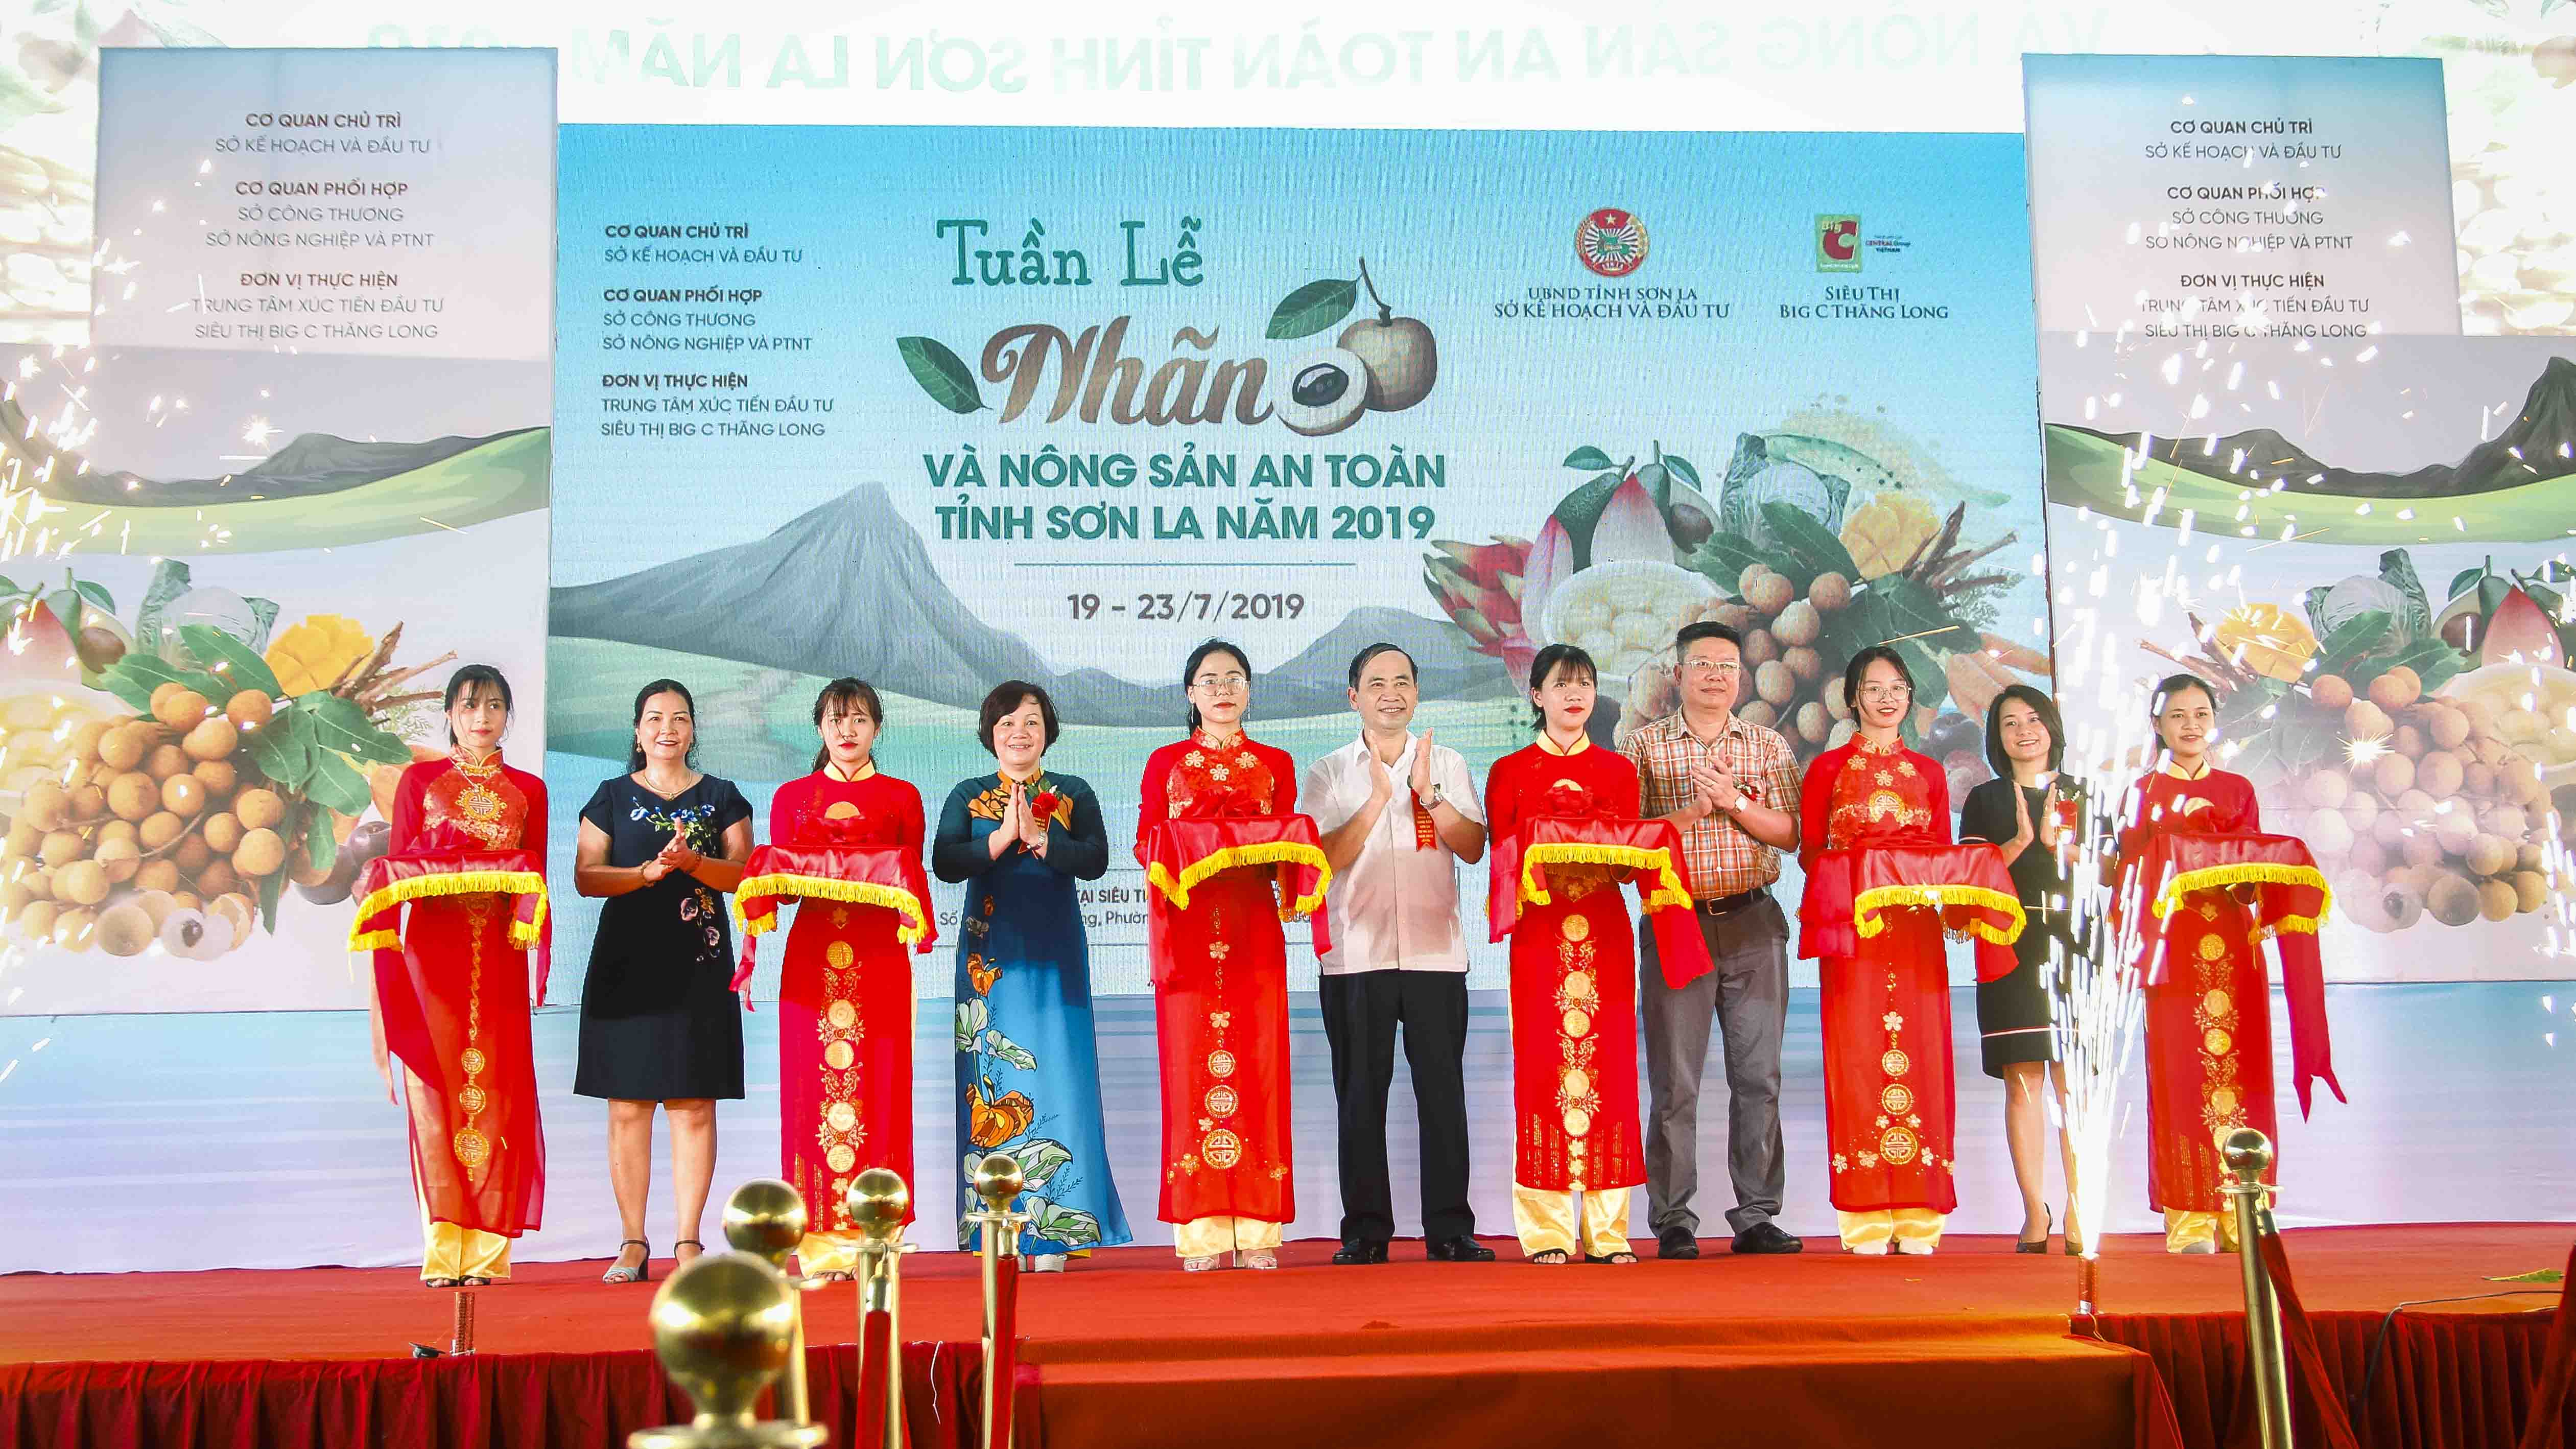 Đại biểu cắt băng khai mạc Tuần lễ Nhãn và Nông sản an toàn tỉnh Sơn La năm 2019